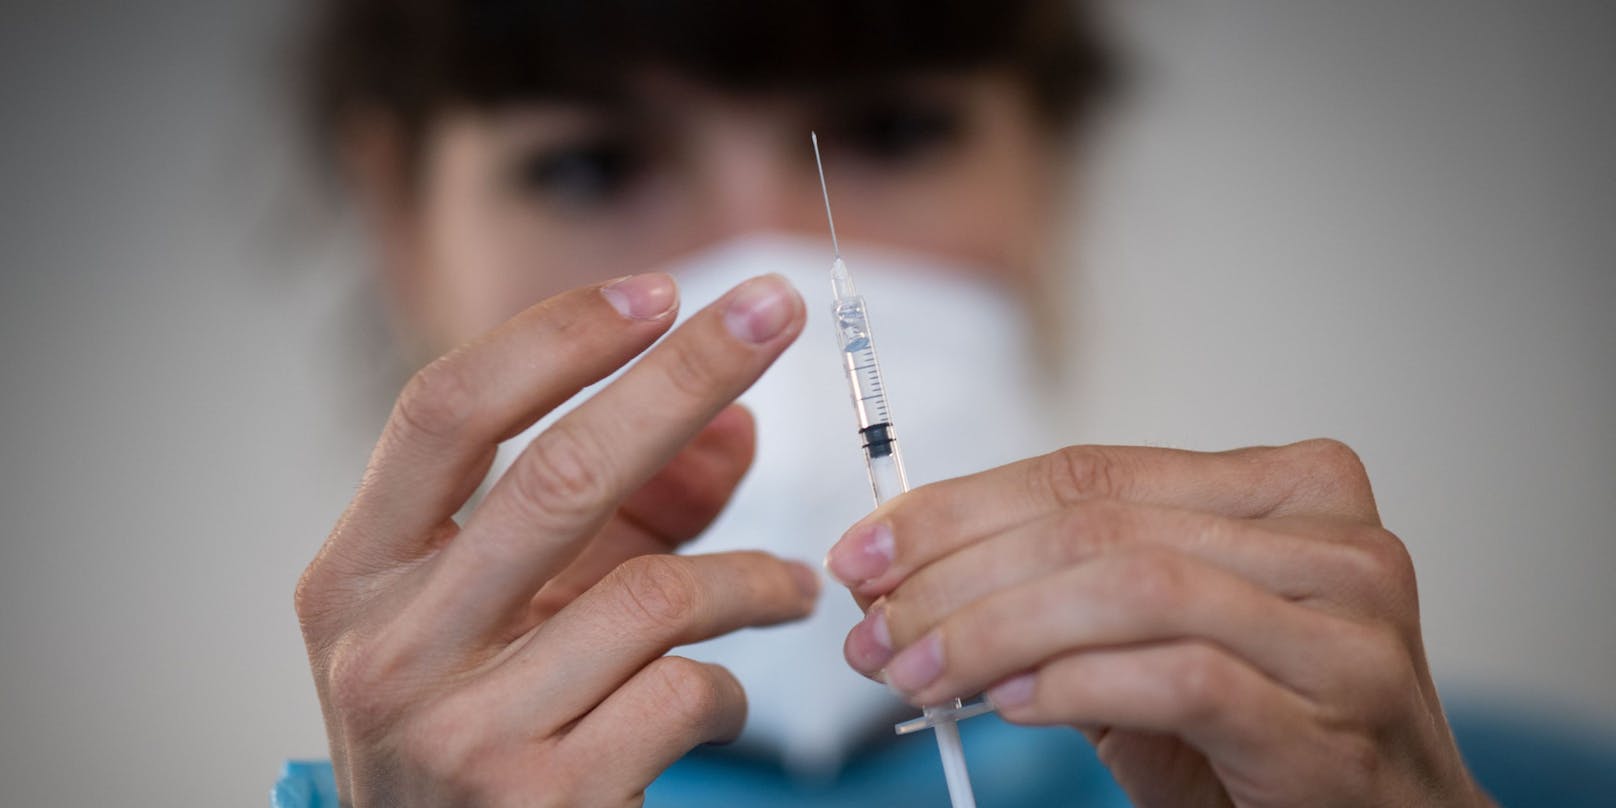 Laut einer israelischen Studie schützt der Biontech-Impfstoff weniger gut gegen die südafrikanische Virus-Variante.